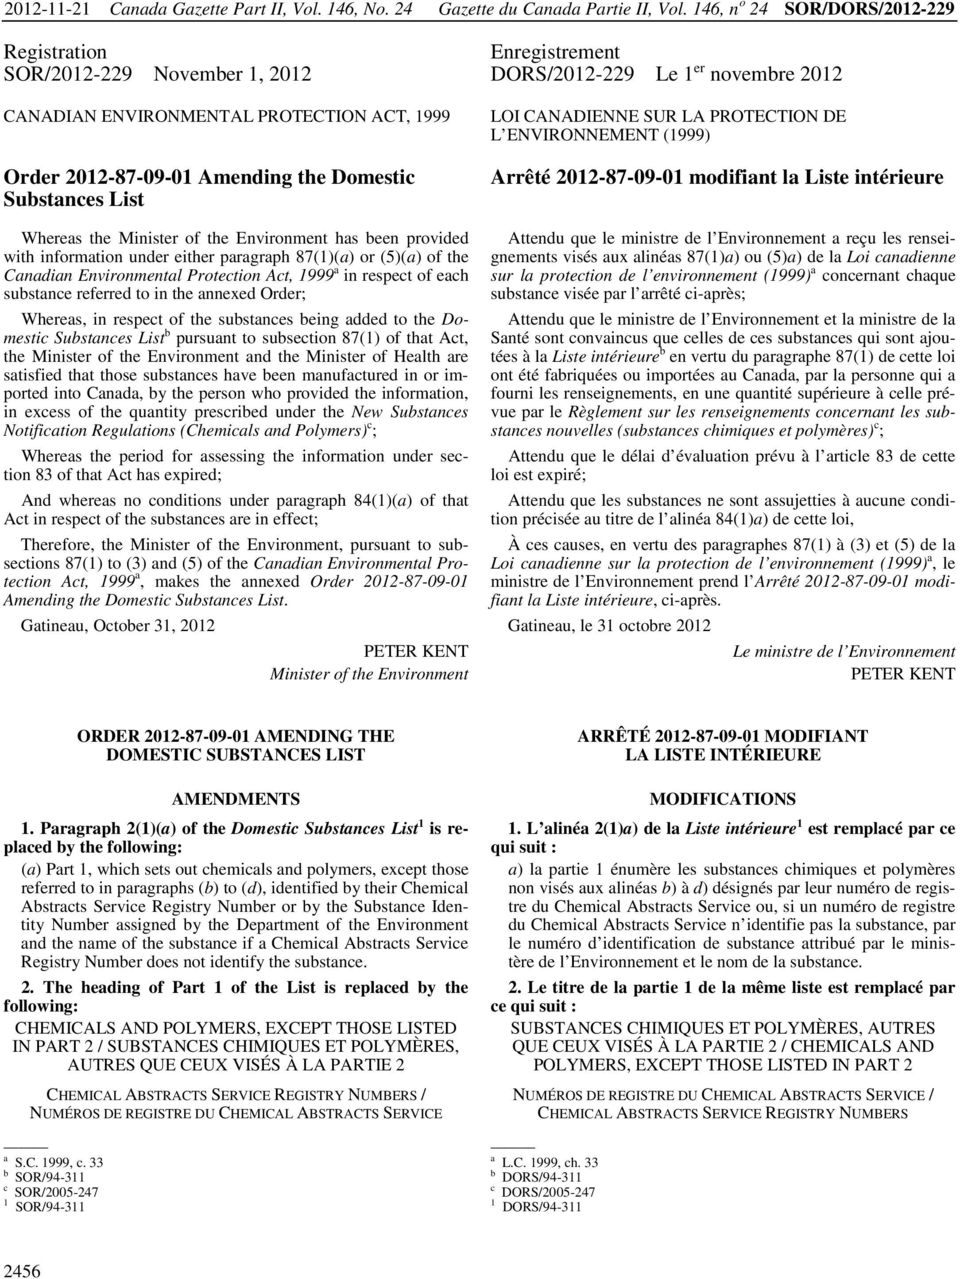 the Domestic Substances List LOI CANADIENNE SUR LA PROTECTION DE L ENVIRONNEMENT (1999) Arrêté 2012-87-09-01 modifiant la Liste intérieure Whereas the Minister of the Environment has been provided